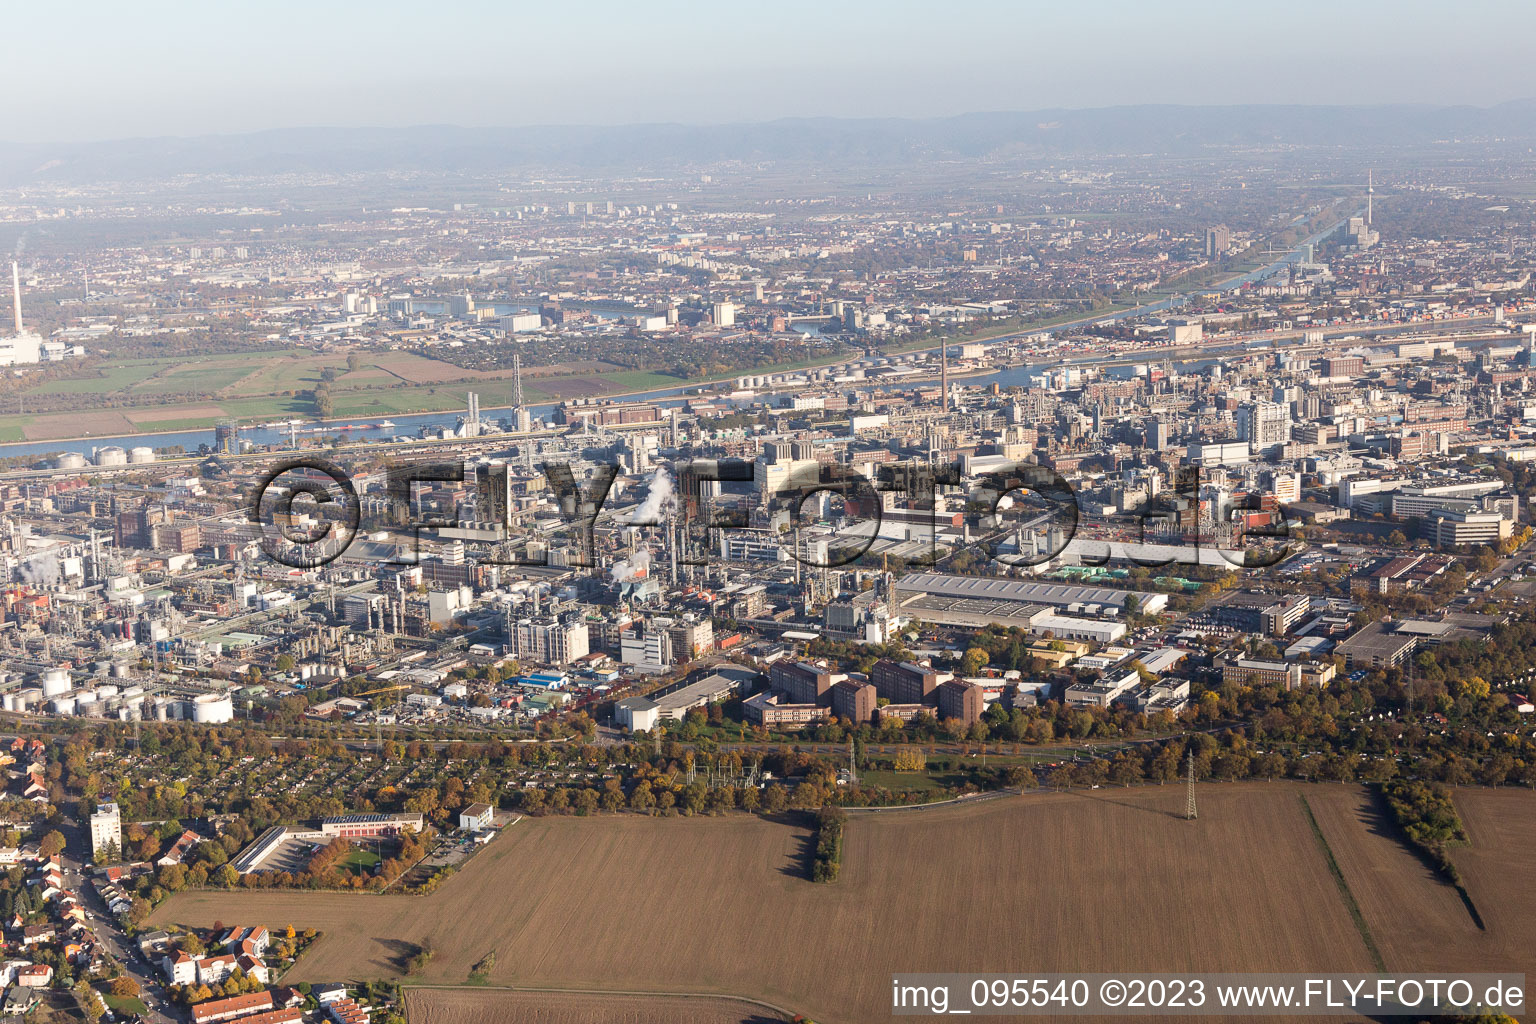 Ortsteil BASF in Ludwigshafen am Rhein im Bundesland Rheinland-Pfalz, Deutschland aus der Drohnenperspektive